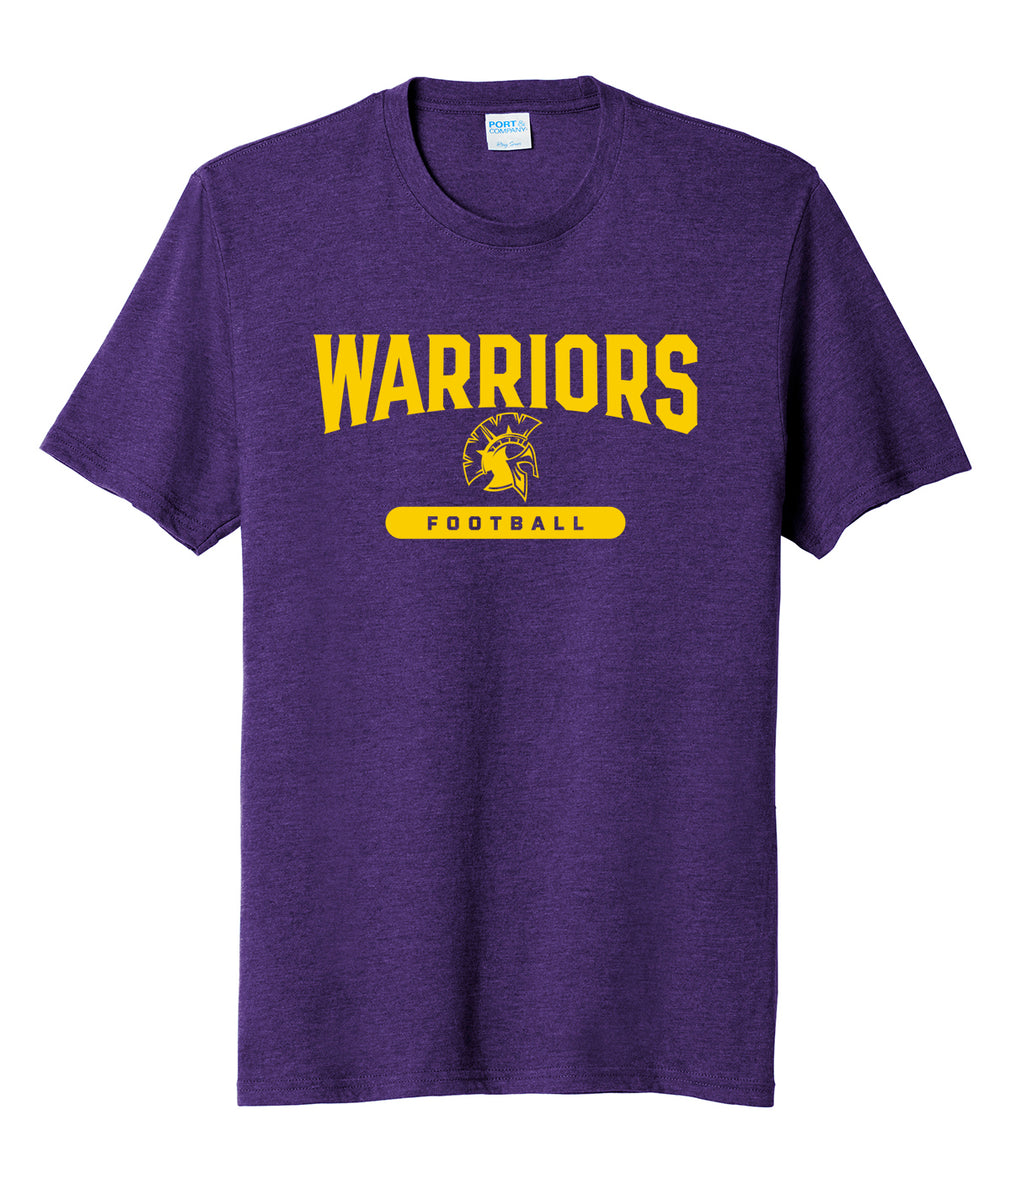 Warriors Football Fan Favorite Soft Tee – Waukee Letterman Locker